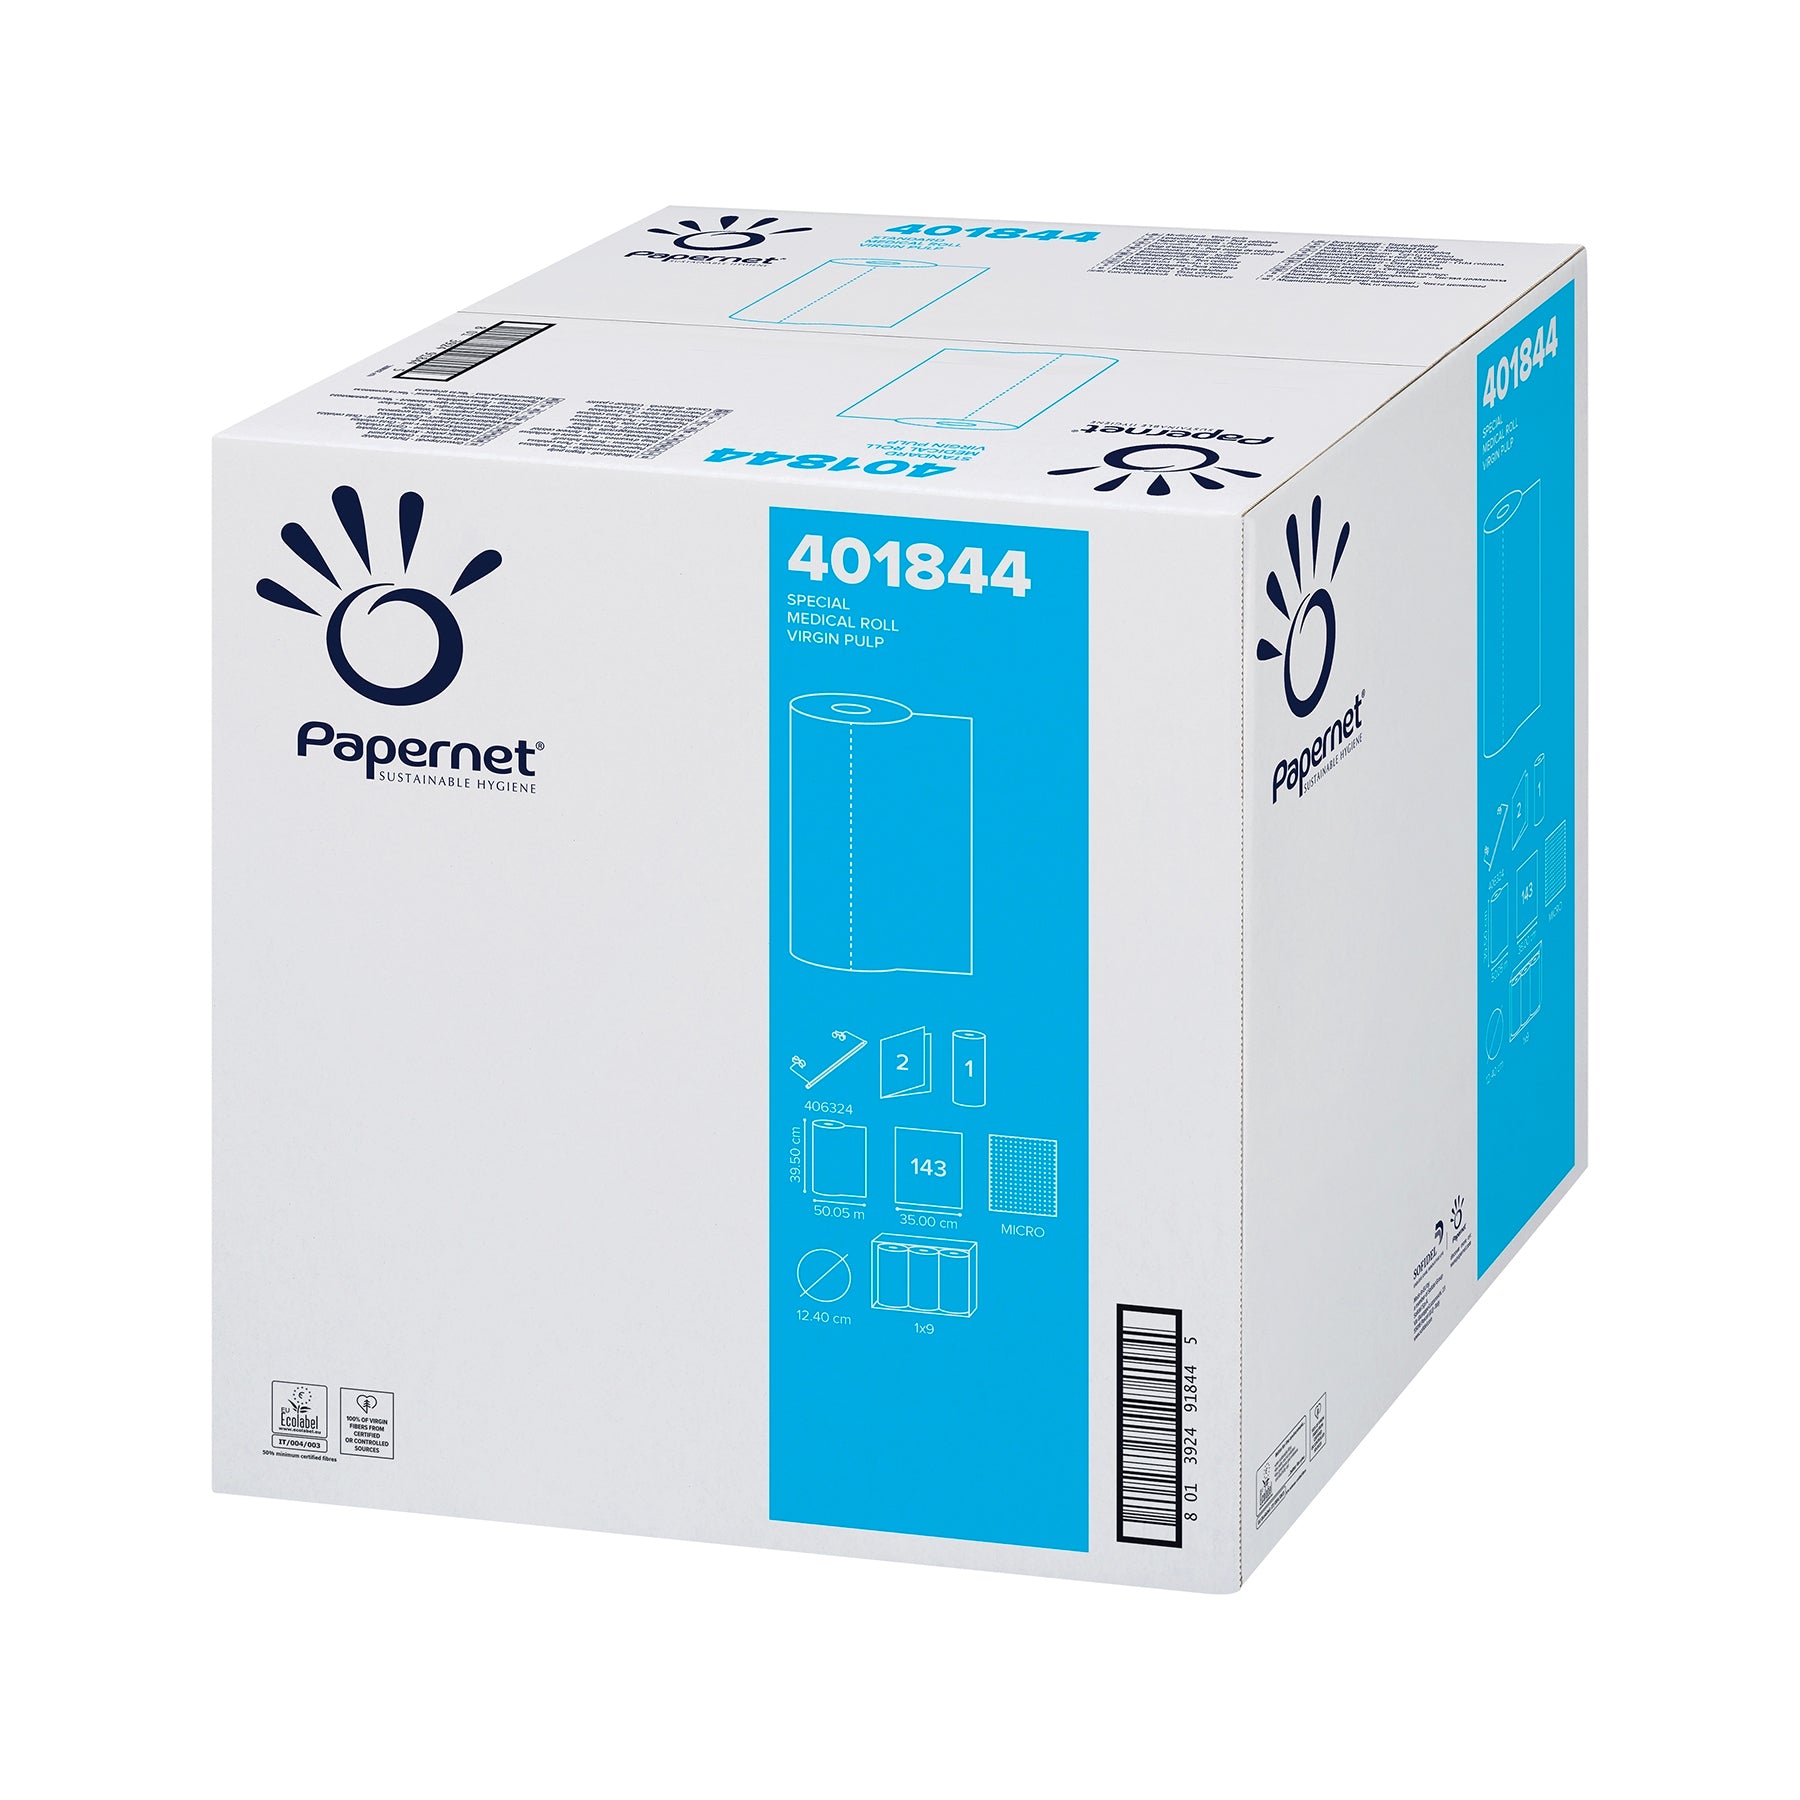 Ein versiegelter Karton mit der Aufschrift „Papernet Liegenabdeckung Ärzterolle 401844 2-lagig | Karton (9 Rollen)“ mit Produktcodes und Symbolen, die Recyclingfähigkeit und Handhabungsanweisungen anzeigen. Der Karton ist mit blauem und schwarzem Aufdruck gestaltet.